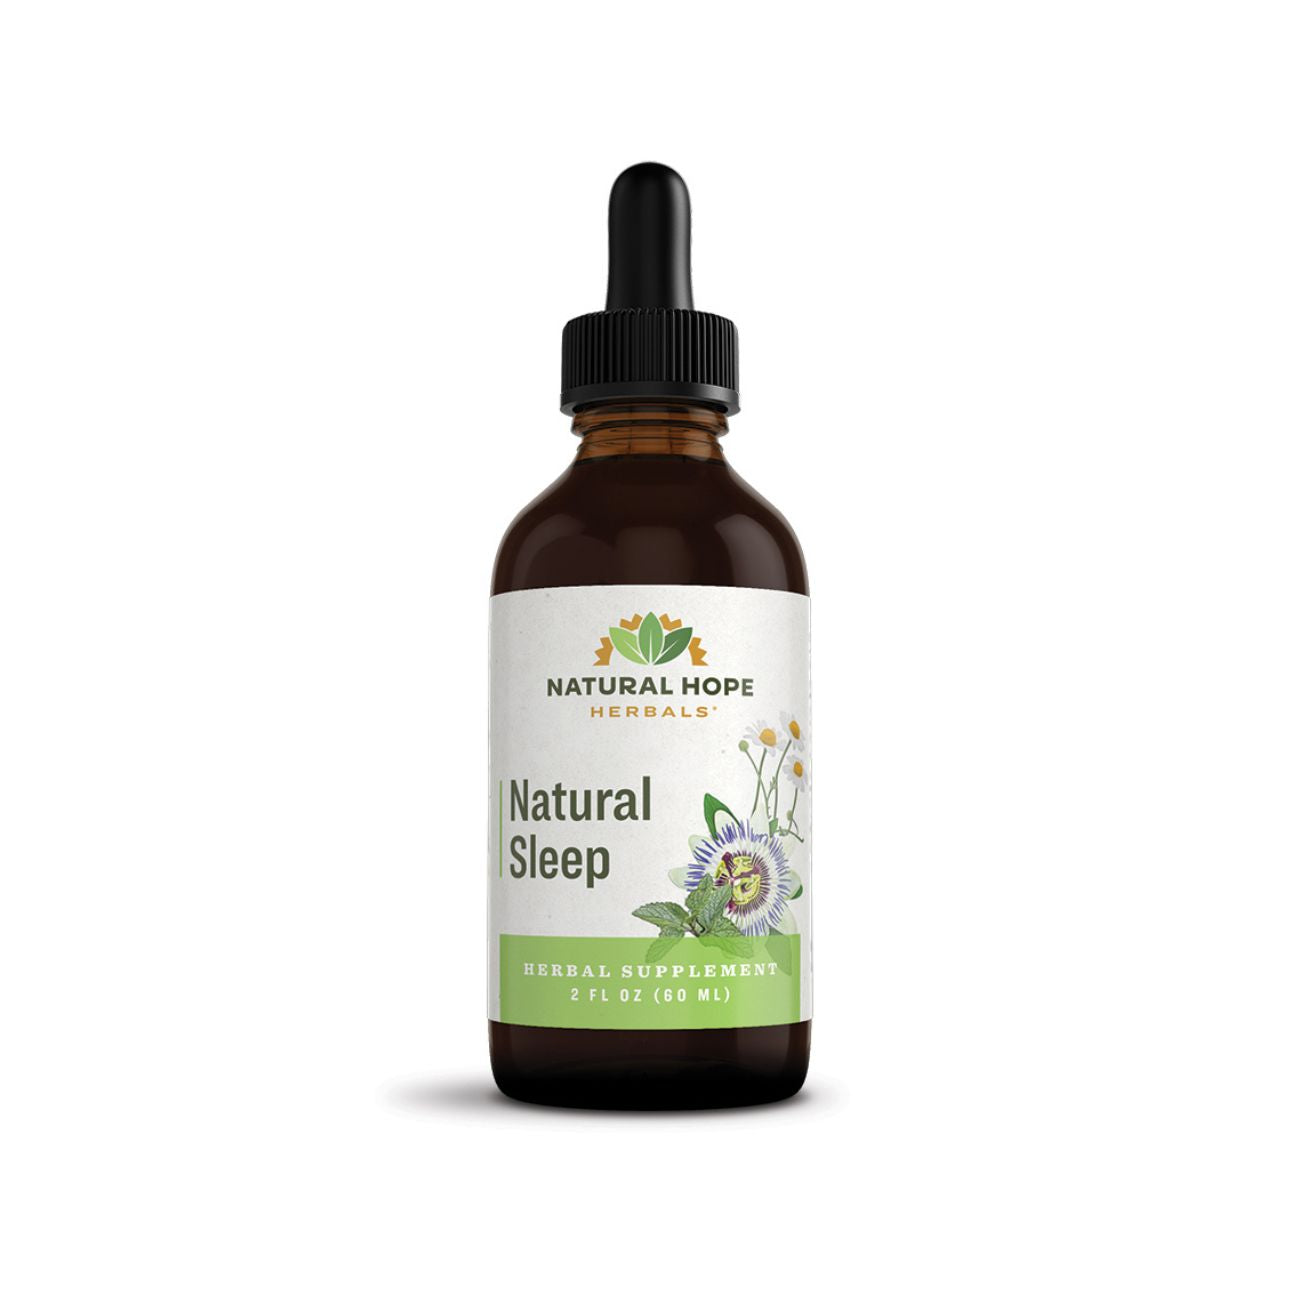 Natural Sleep - Natural Hope Herbals